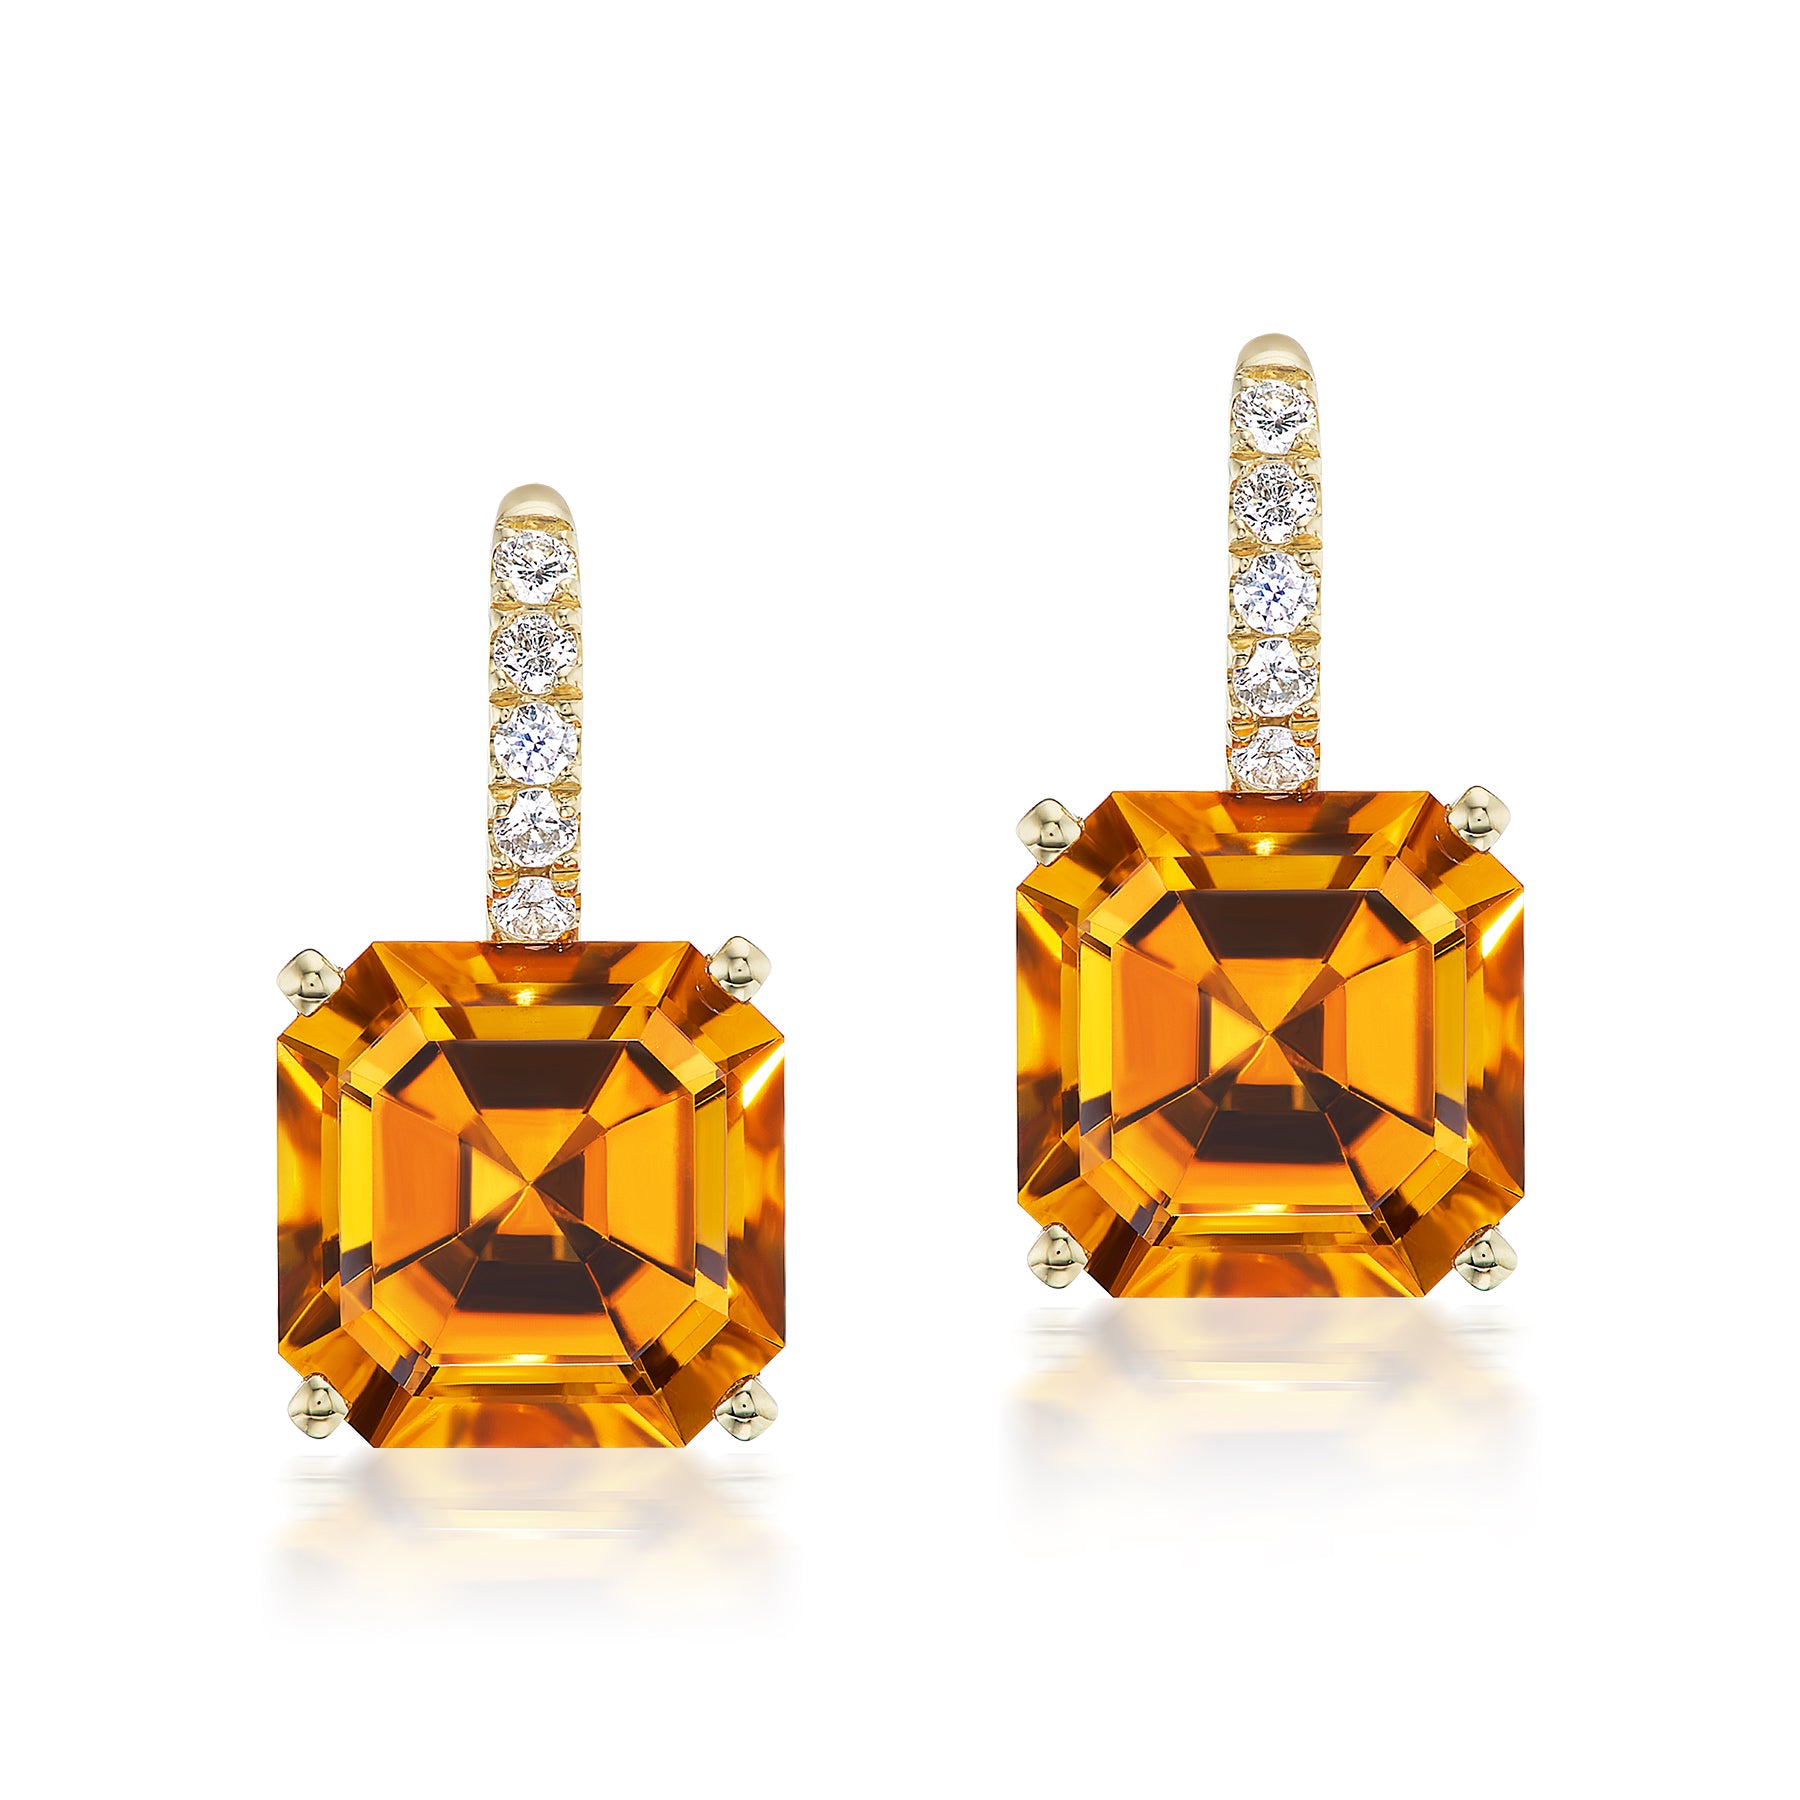 Ear Wire Diamond and Gemstone Drop Earrings